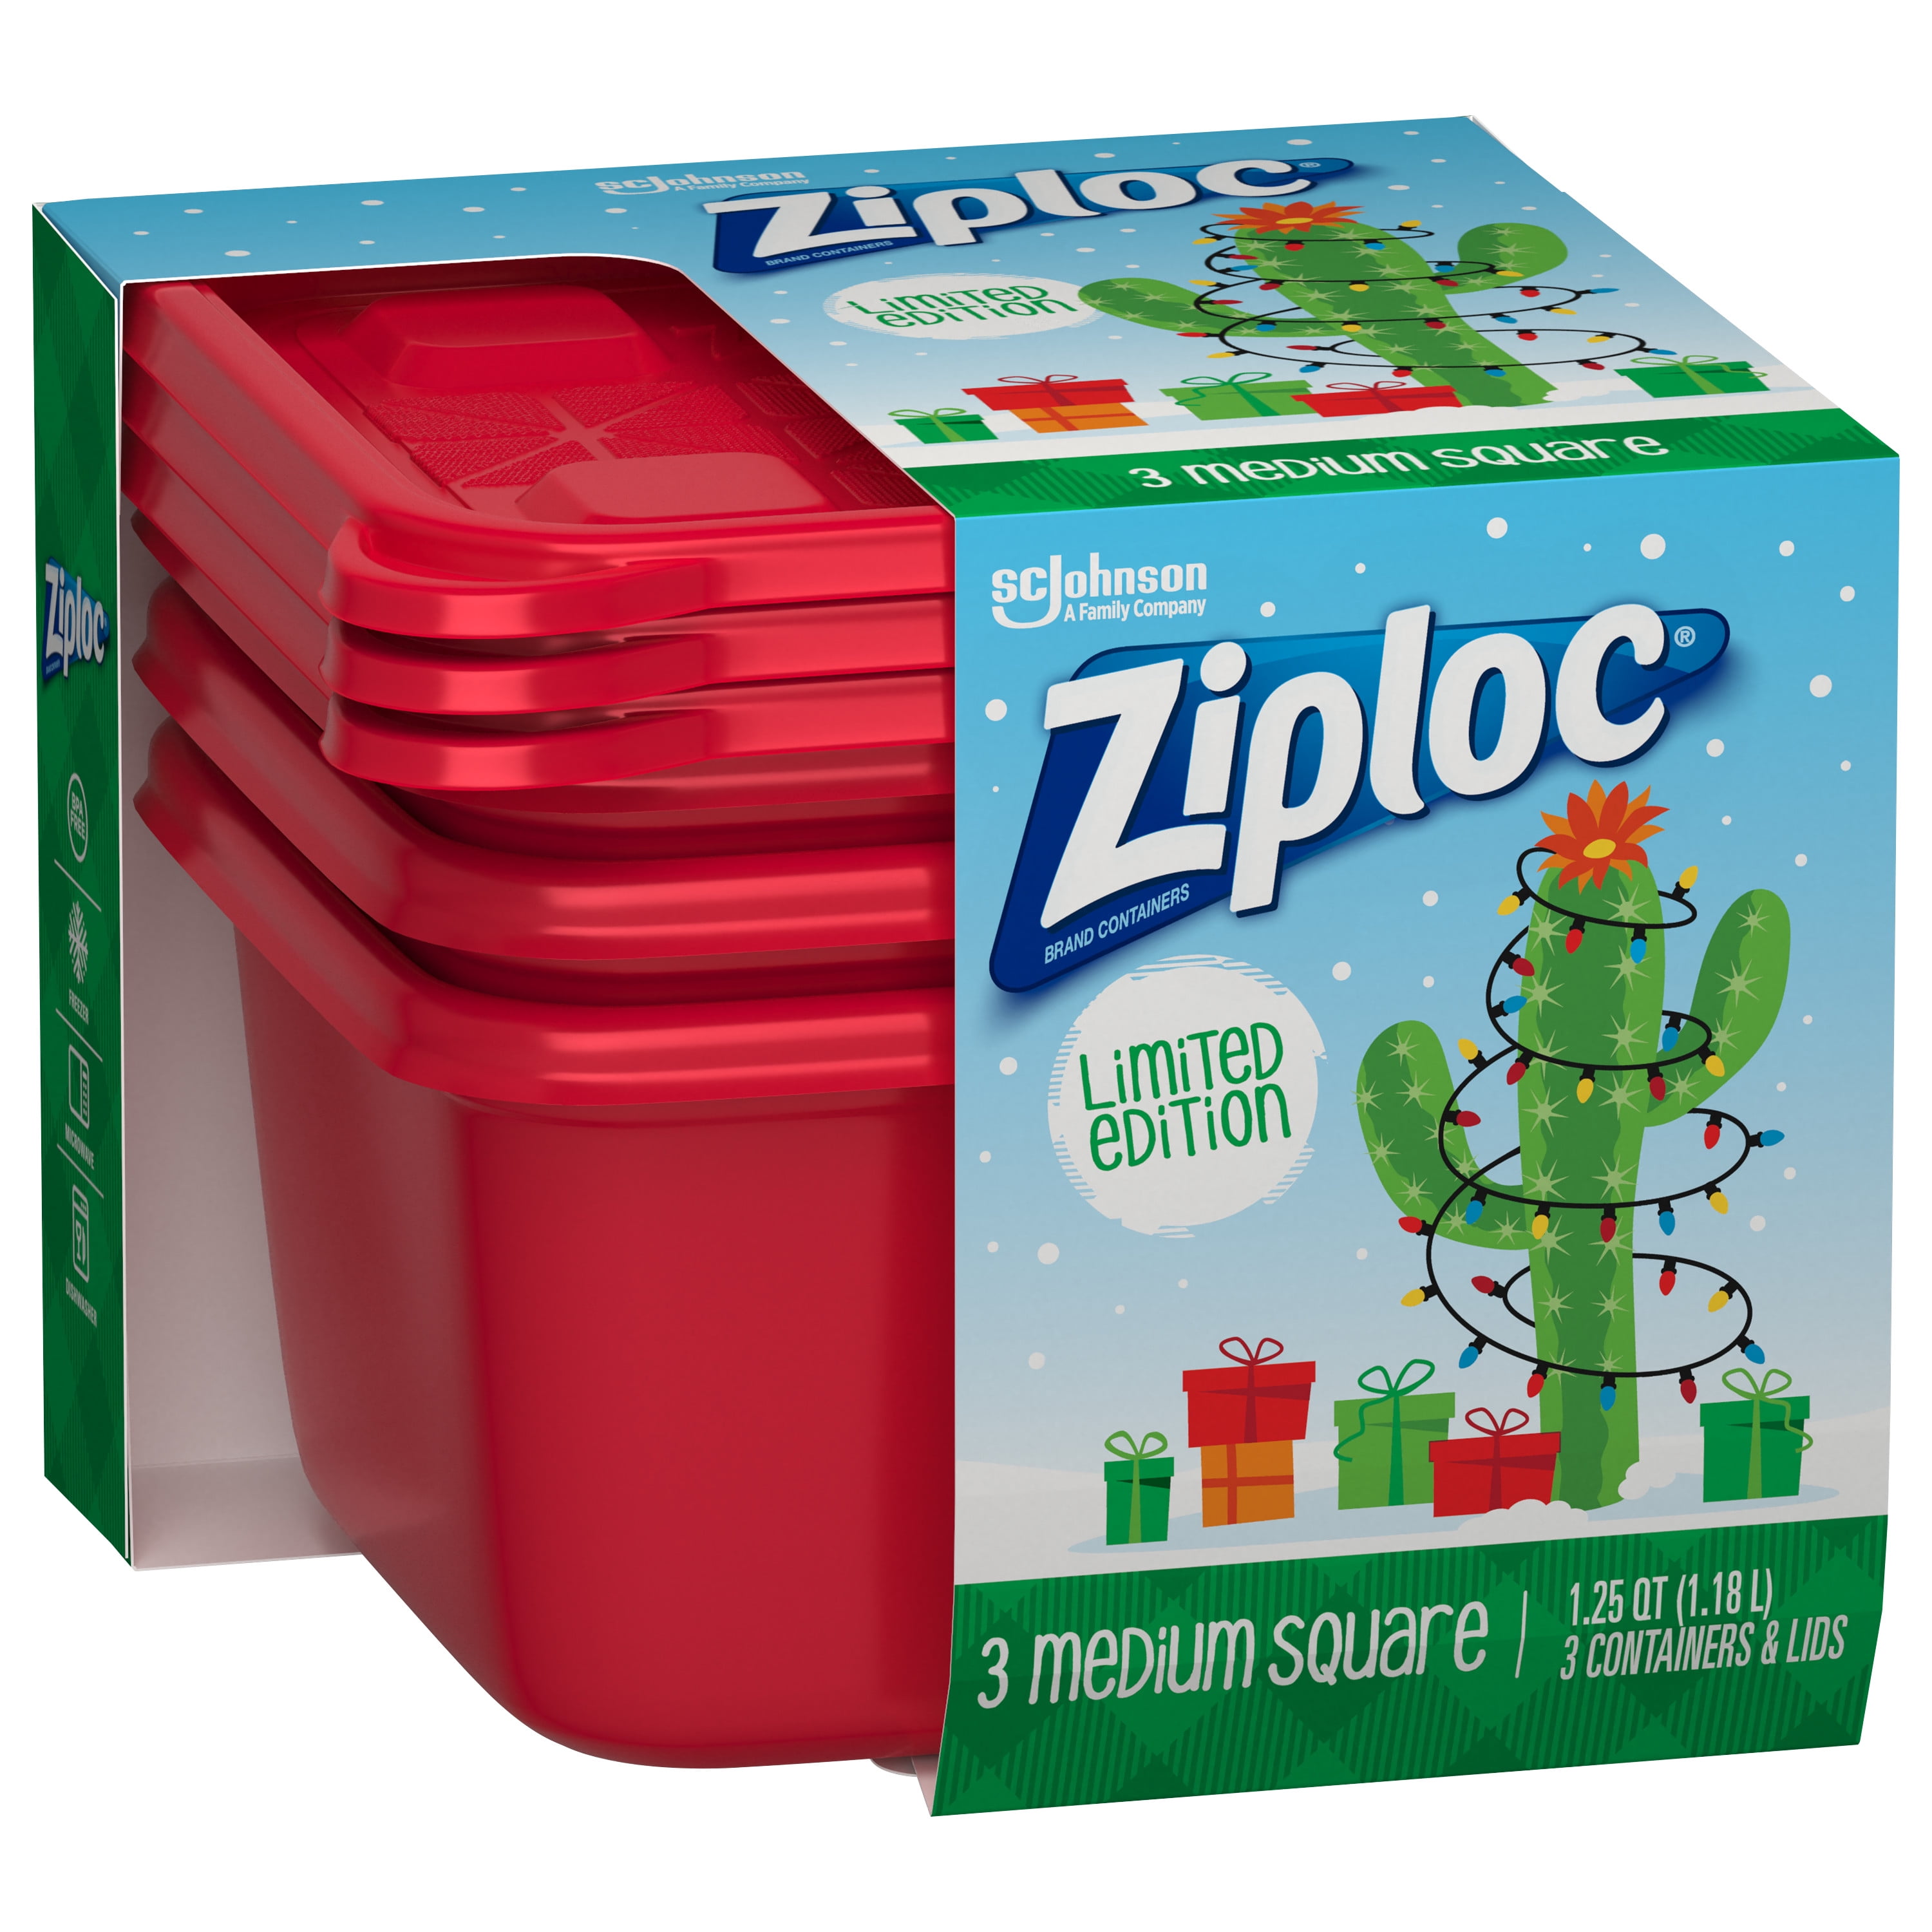 Ziploc 3 T Medium Sq Containers, Plastic Containers